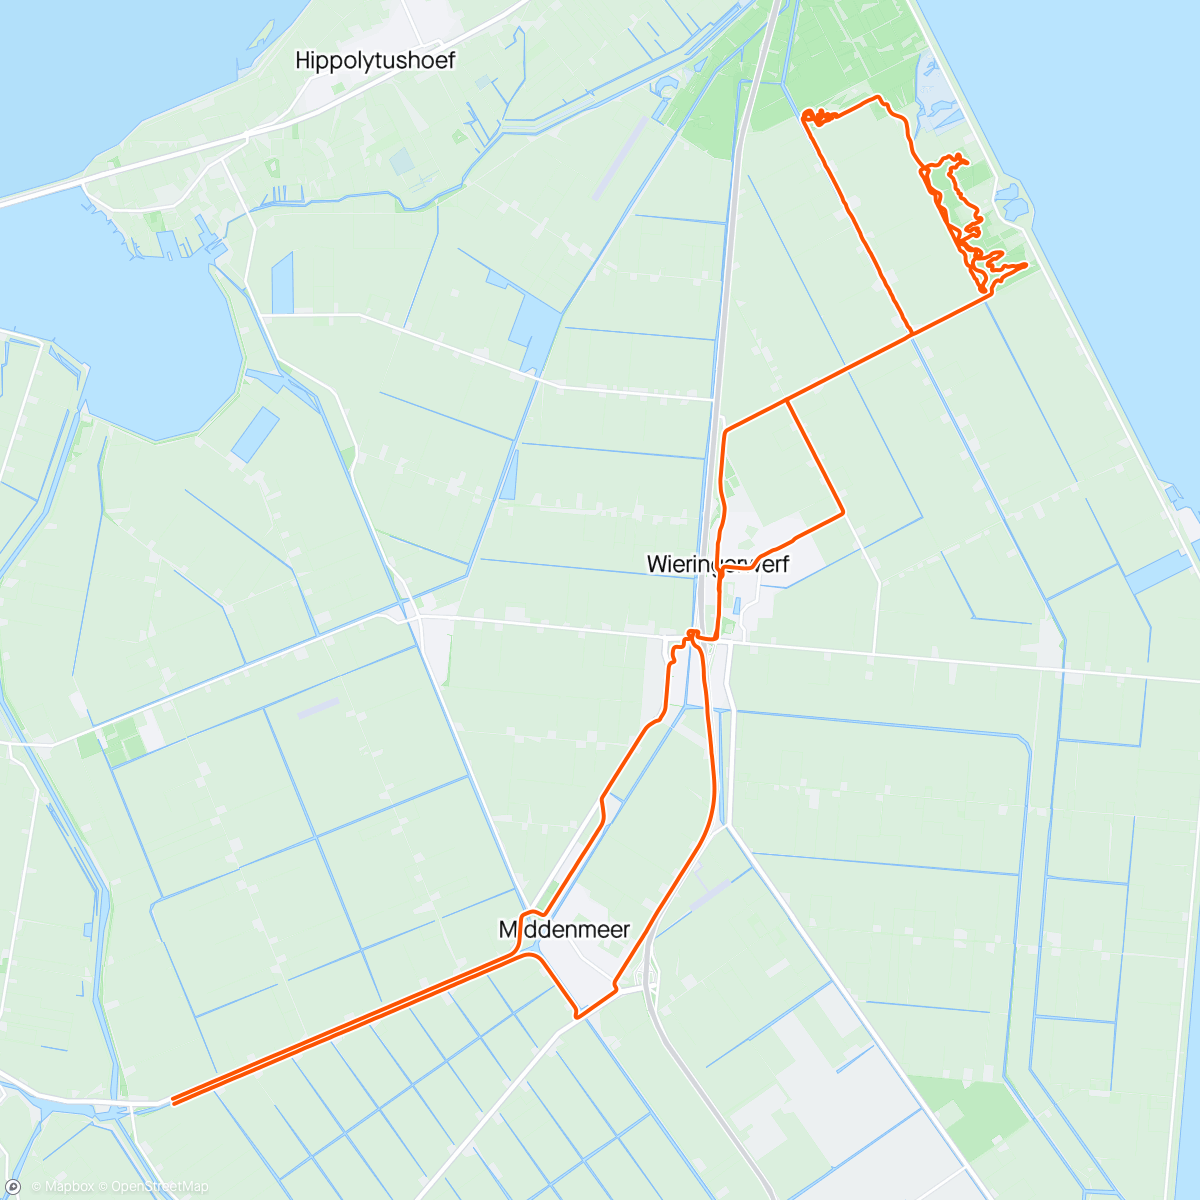 「Rondje met Dex」活動的地圖